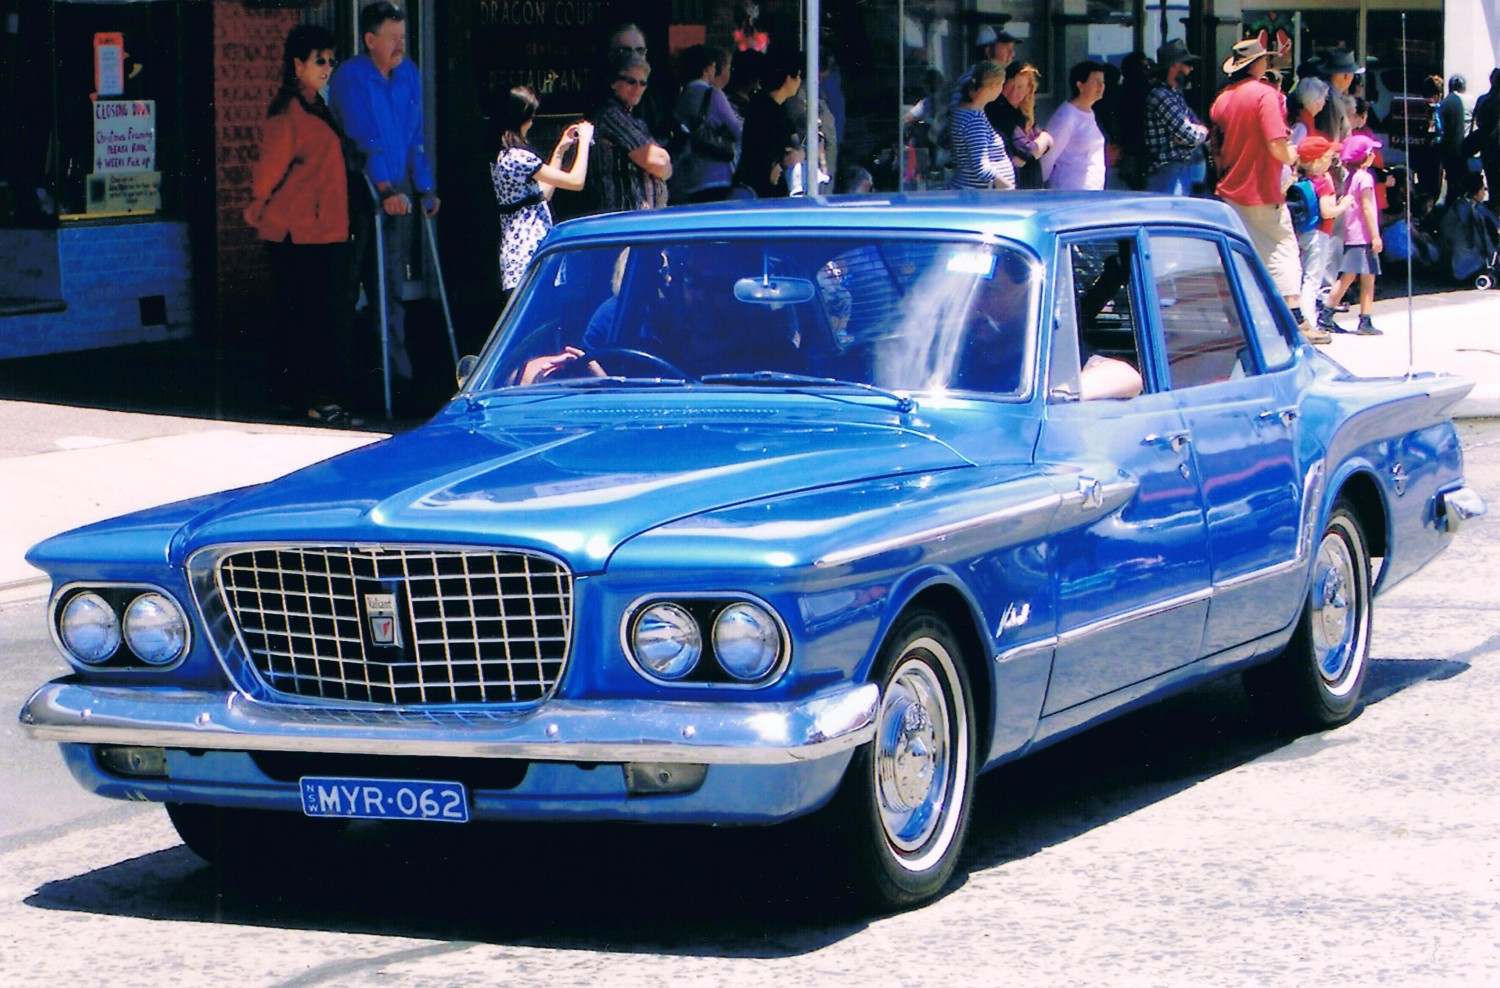 1962 Chrysler R series Valiant